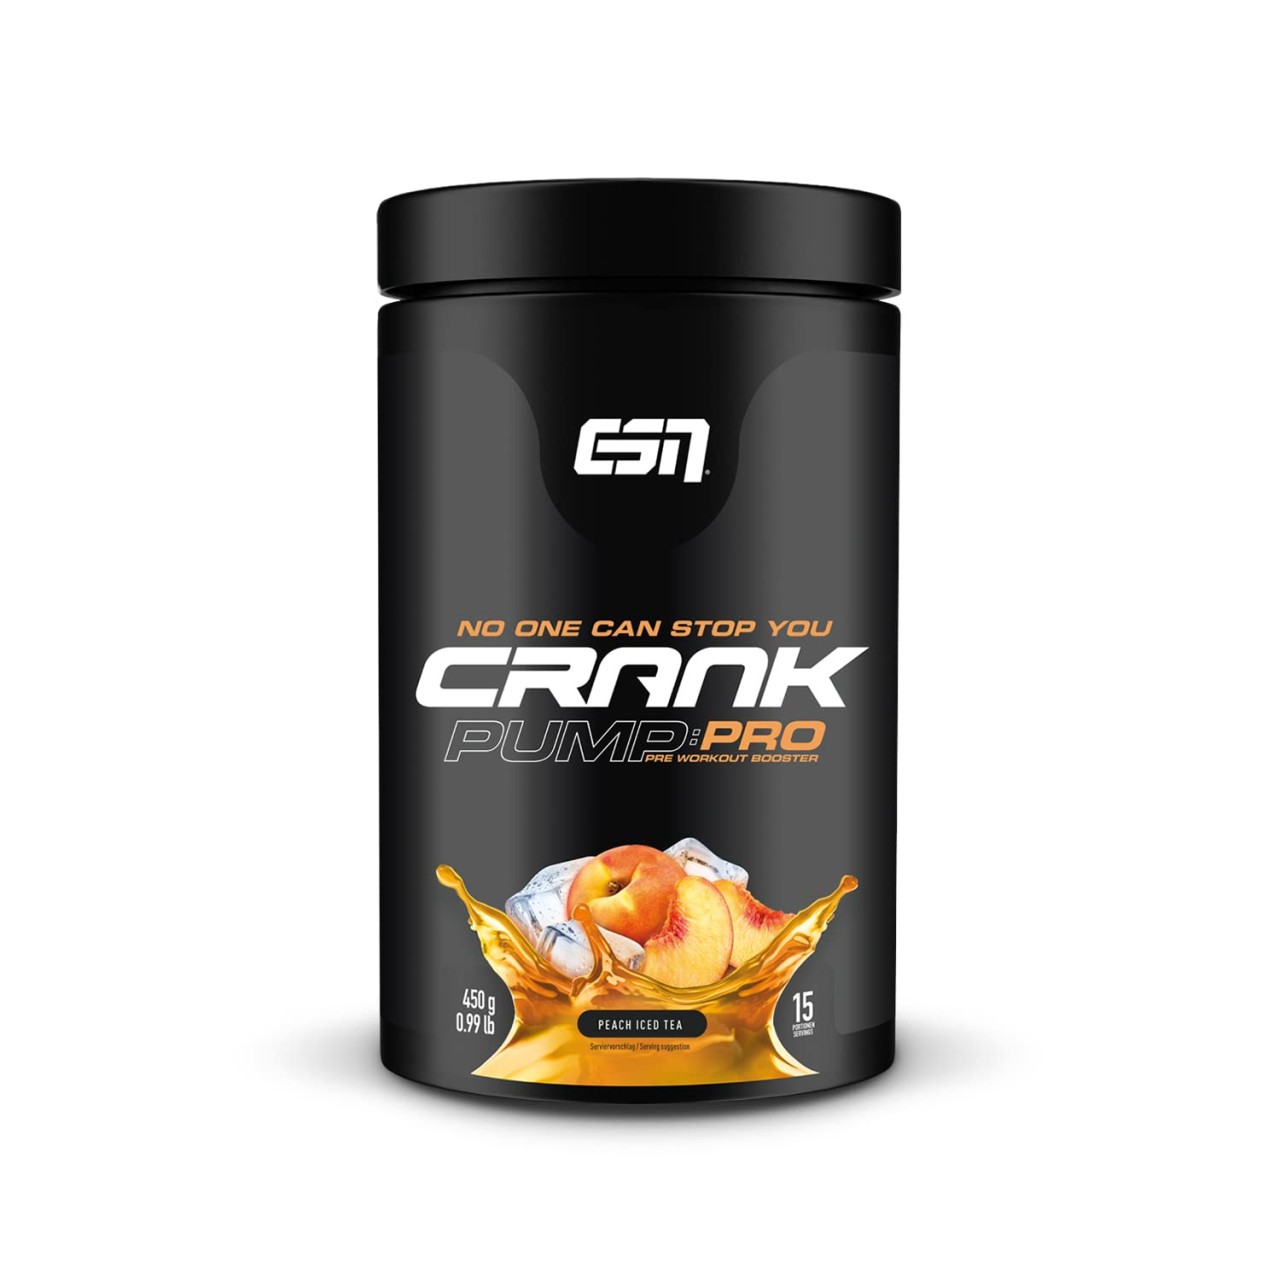 ESN Crank Pump Pro 450g - Pre workout Booster - L-Citrullin-Malat und weitere... von ESN